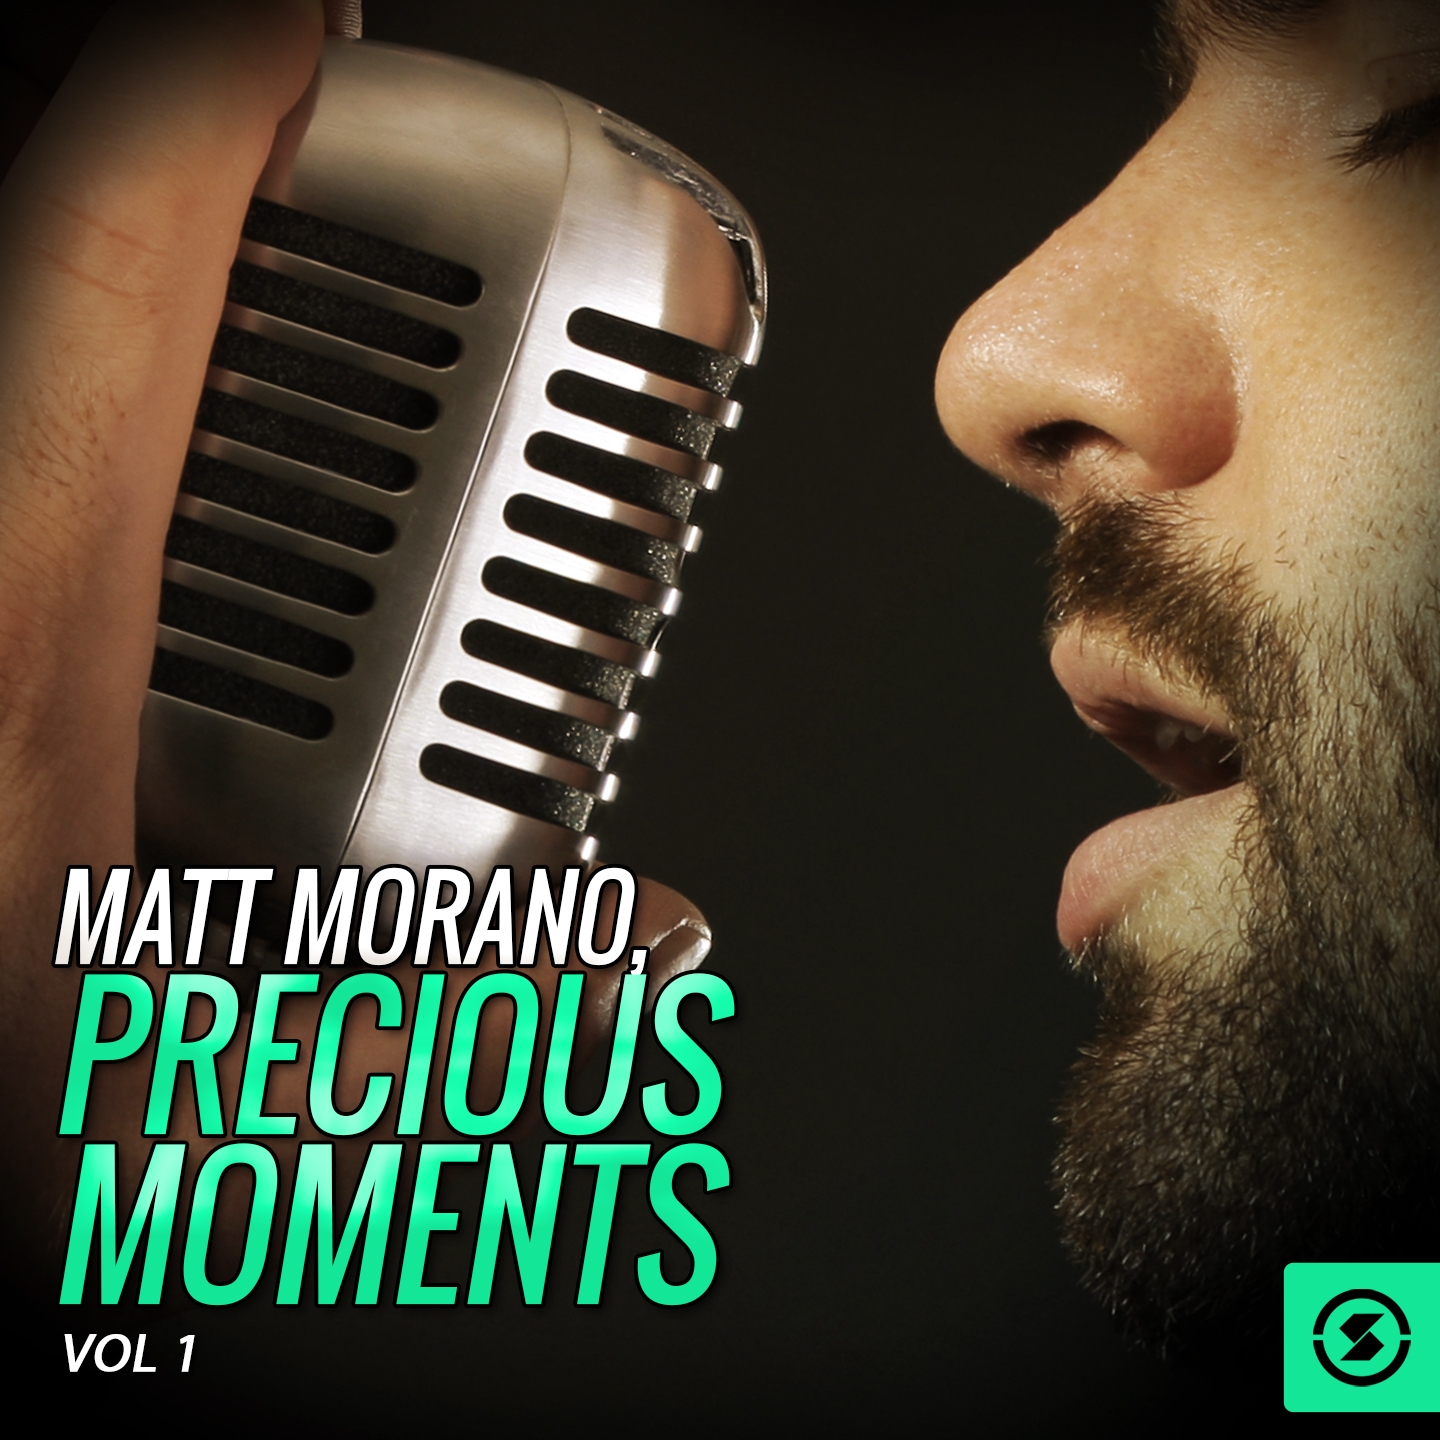 Matt Morano, Precious Moments, Vol. 1